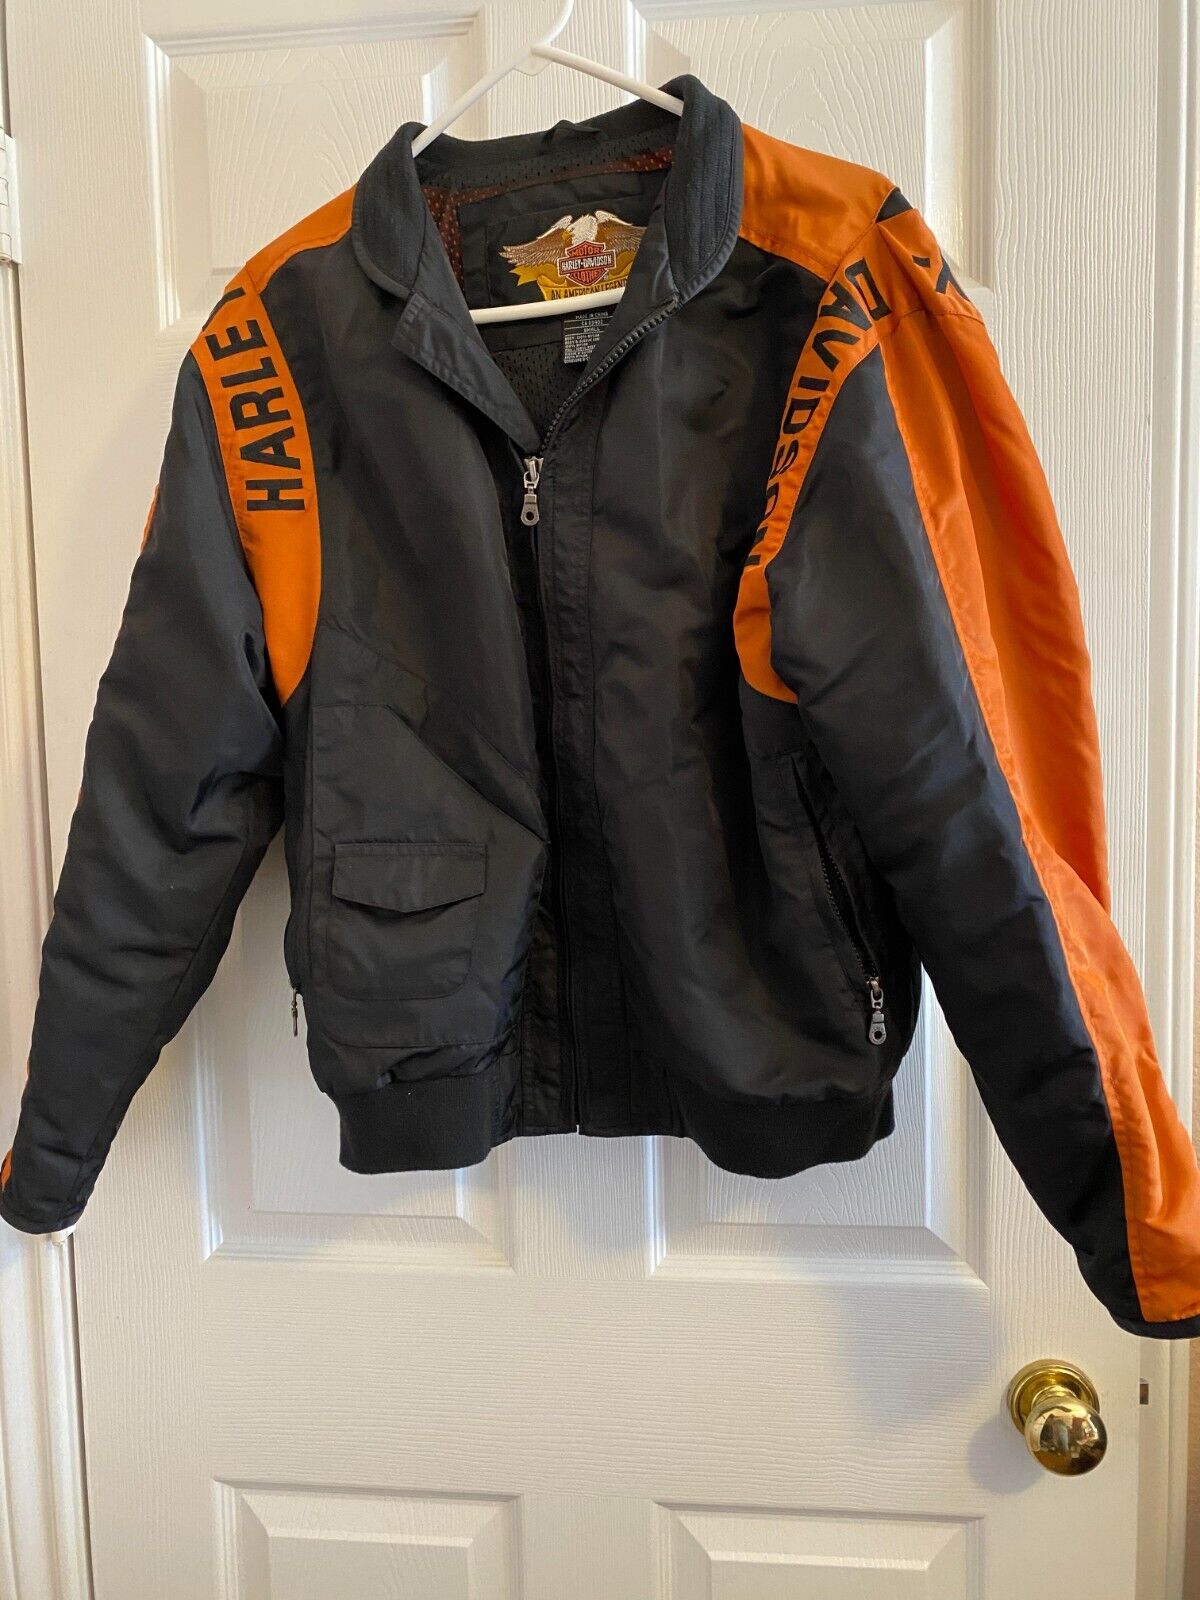 Authentic Harley Davidson jacket - image 1